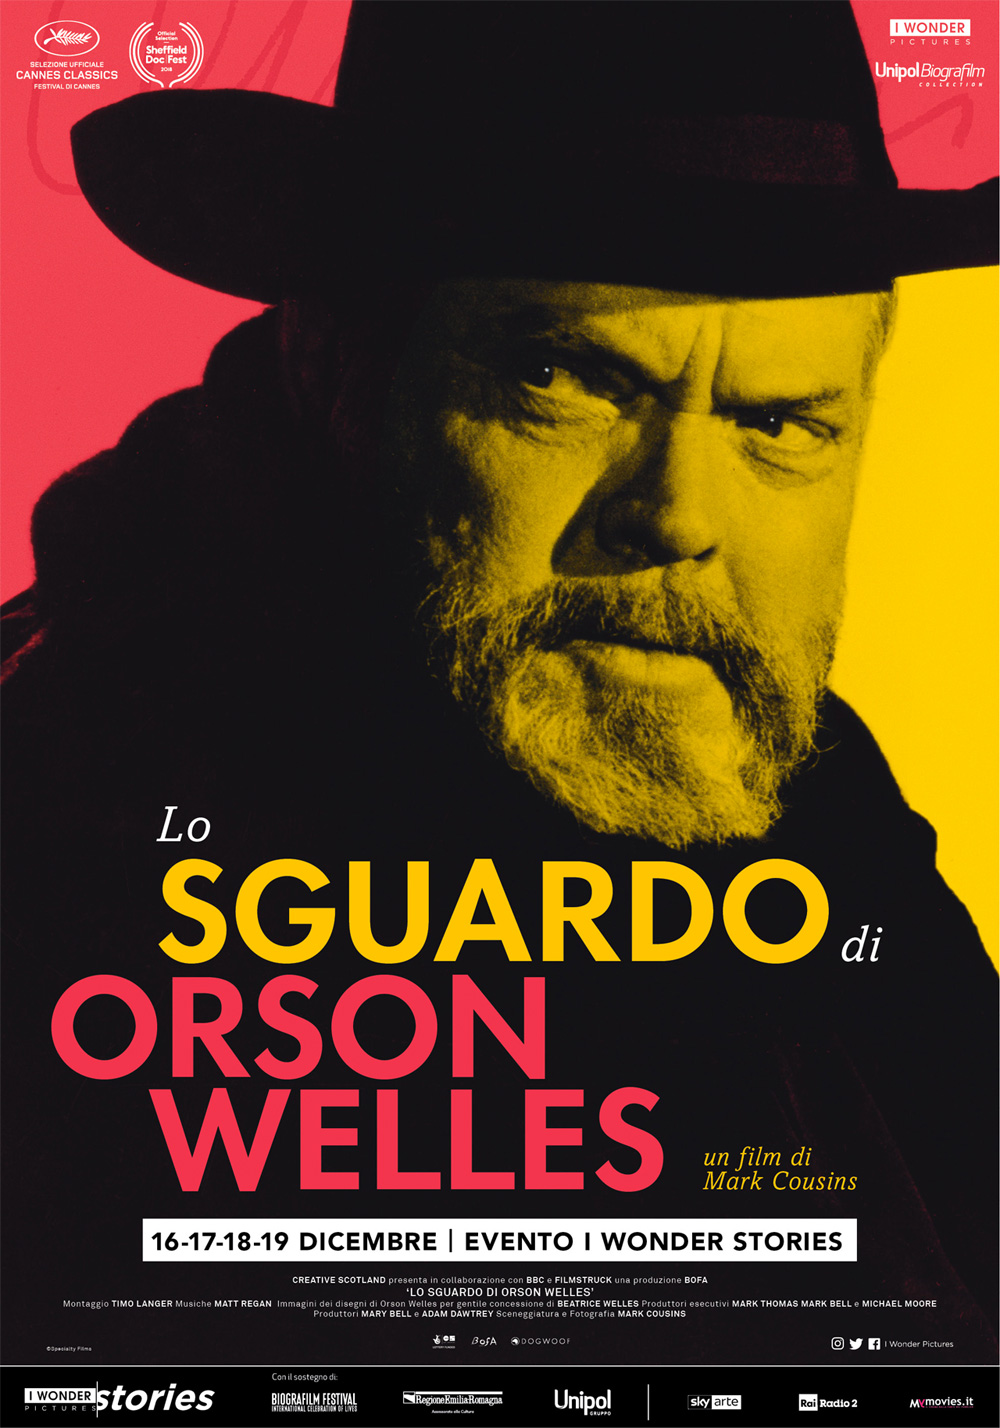  Dall'articolo: Lo sguardo di Orson Welles, il poster italiano del film.